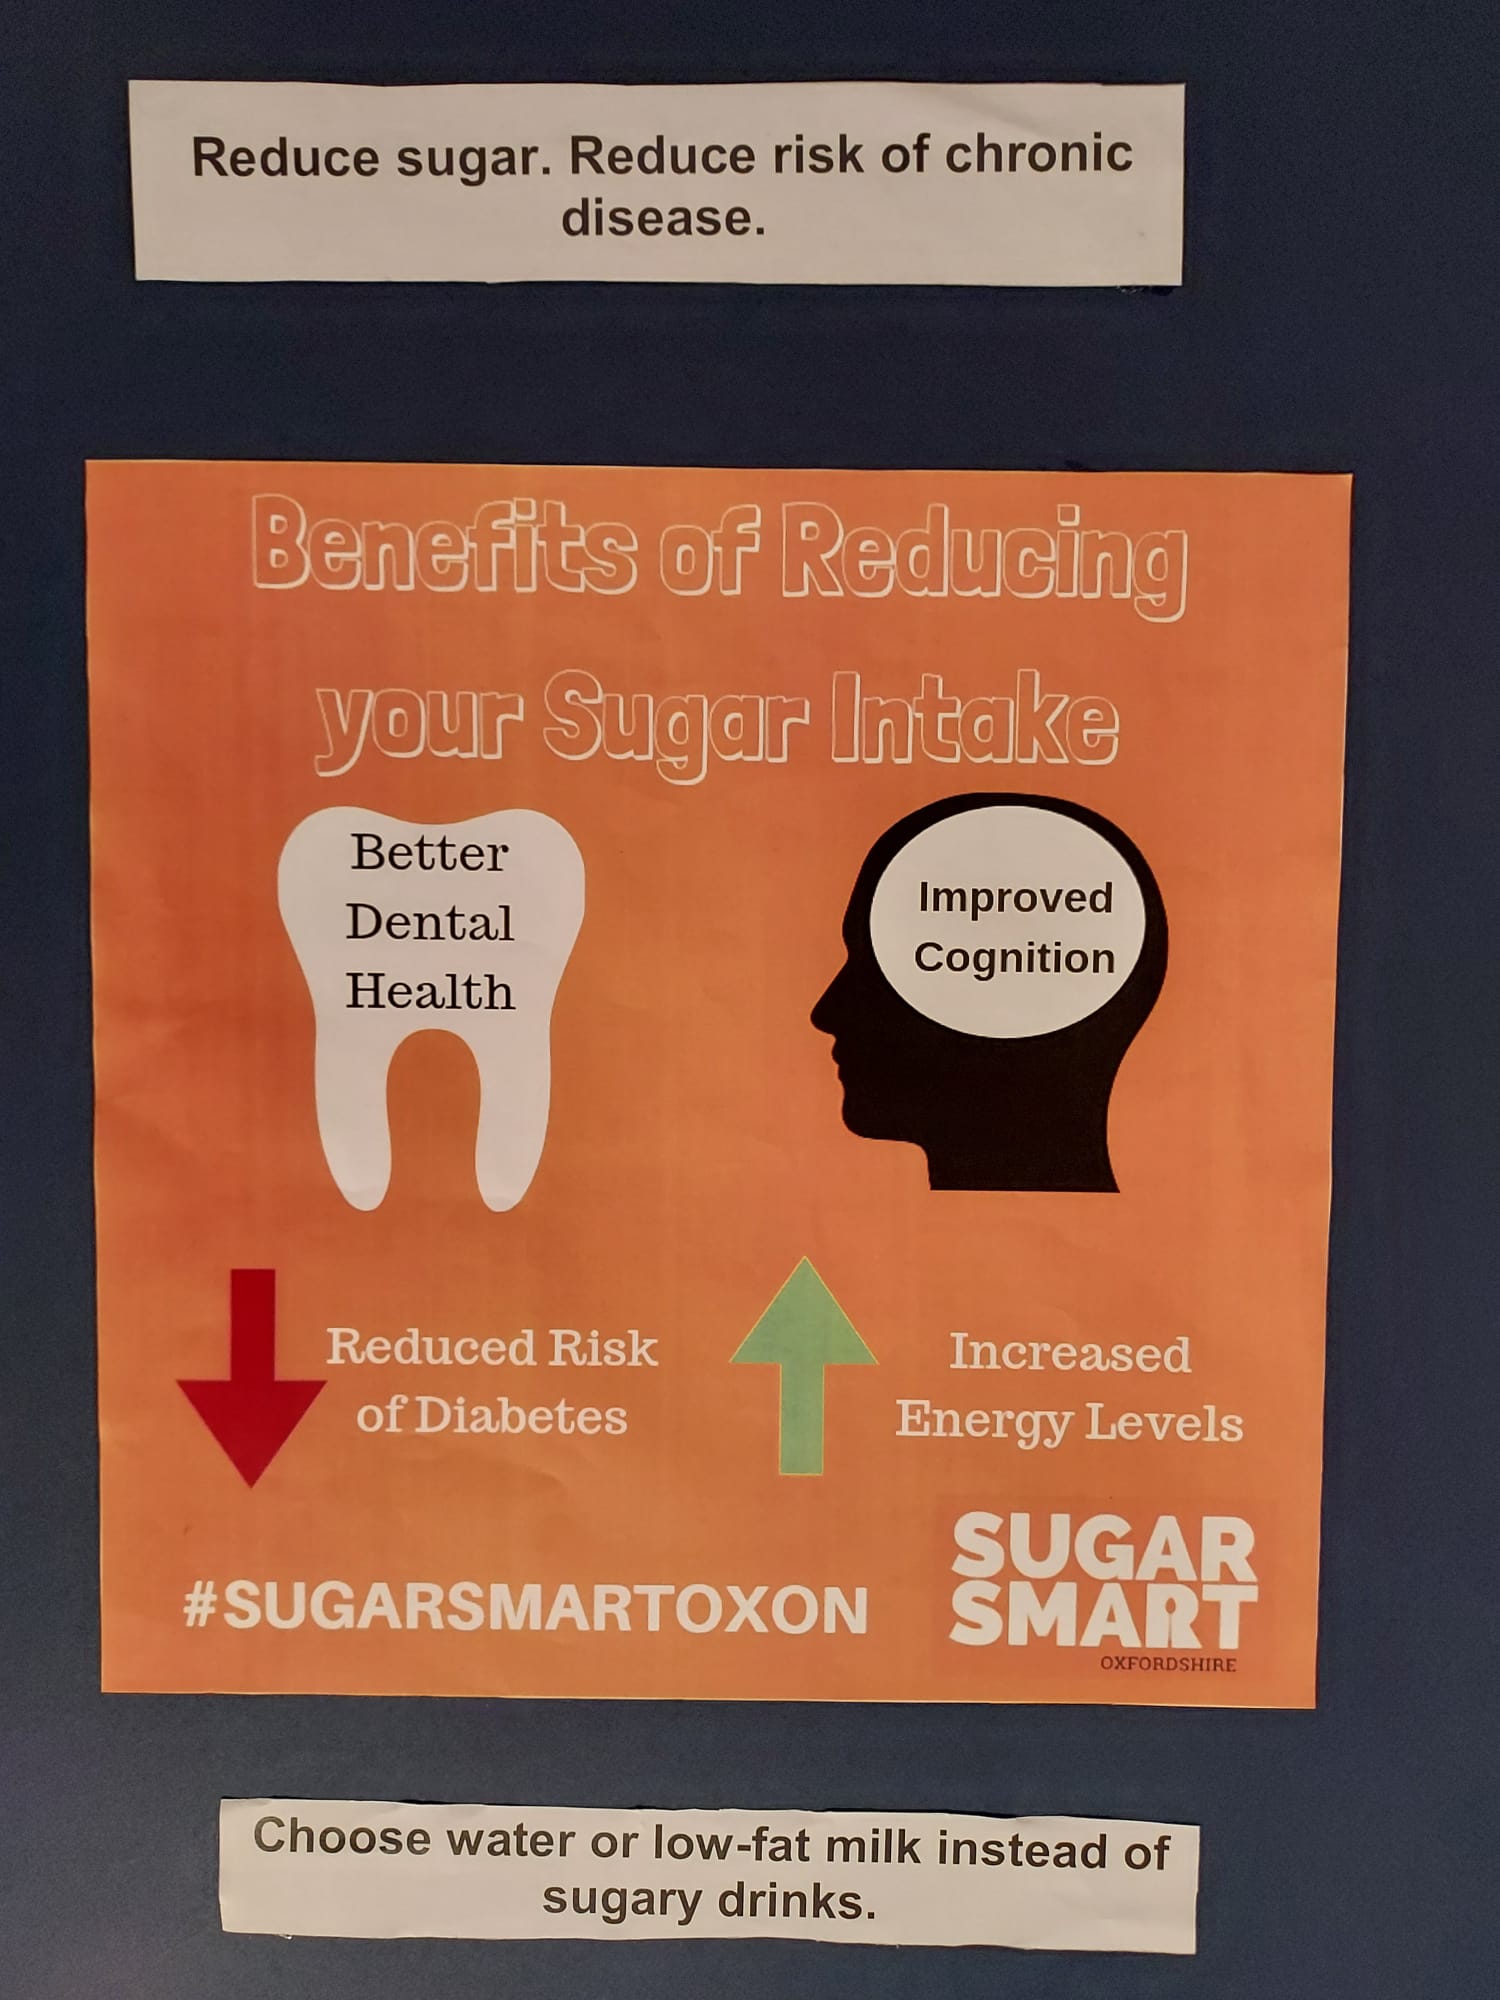 Pormenor do painel que apresenta os benefícios de baixos valores de açúcar